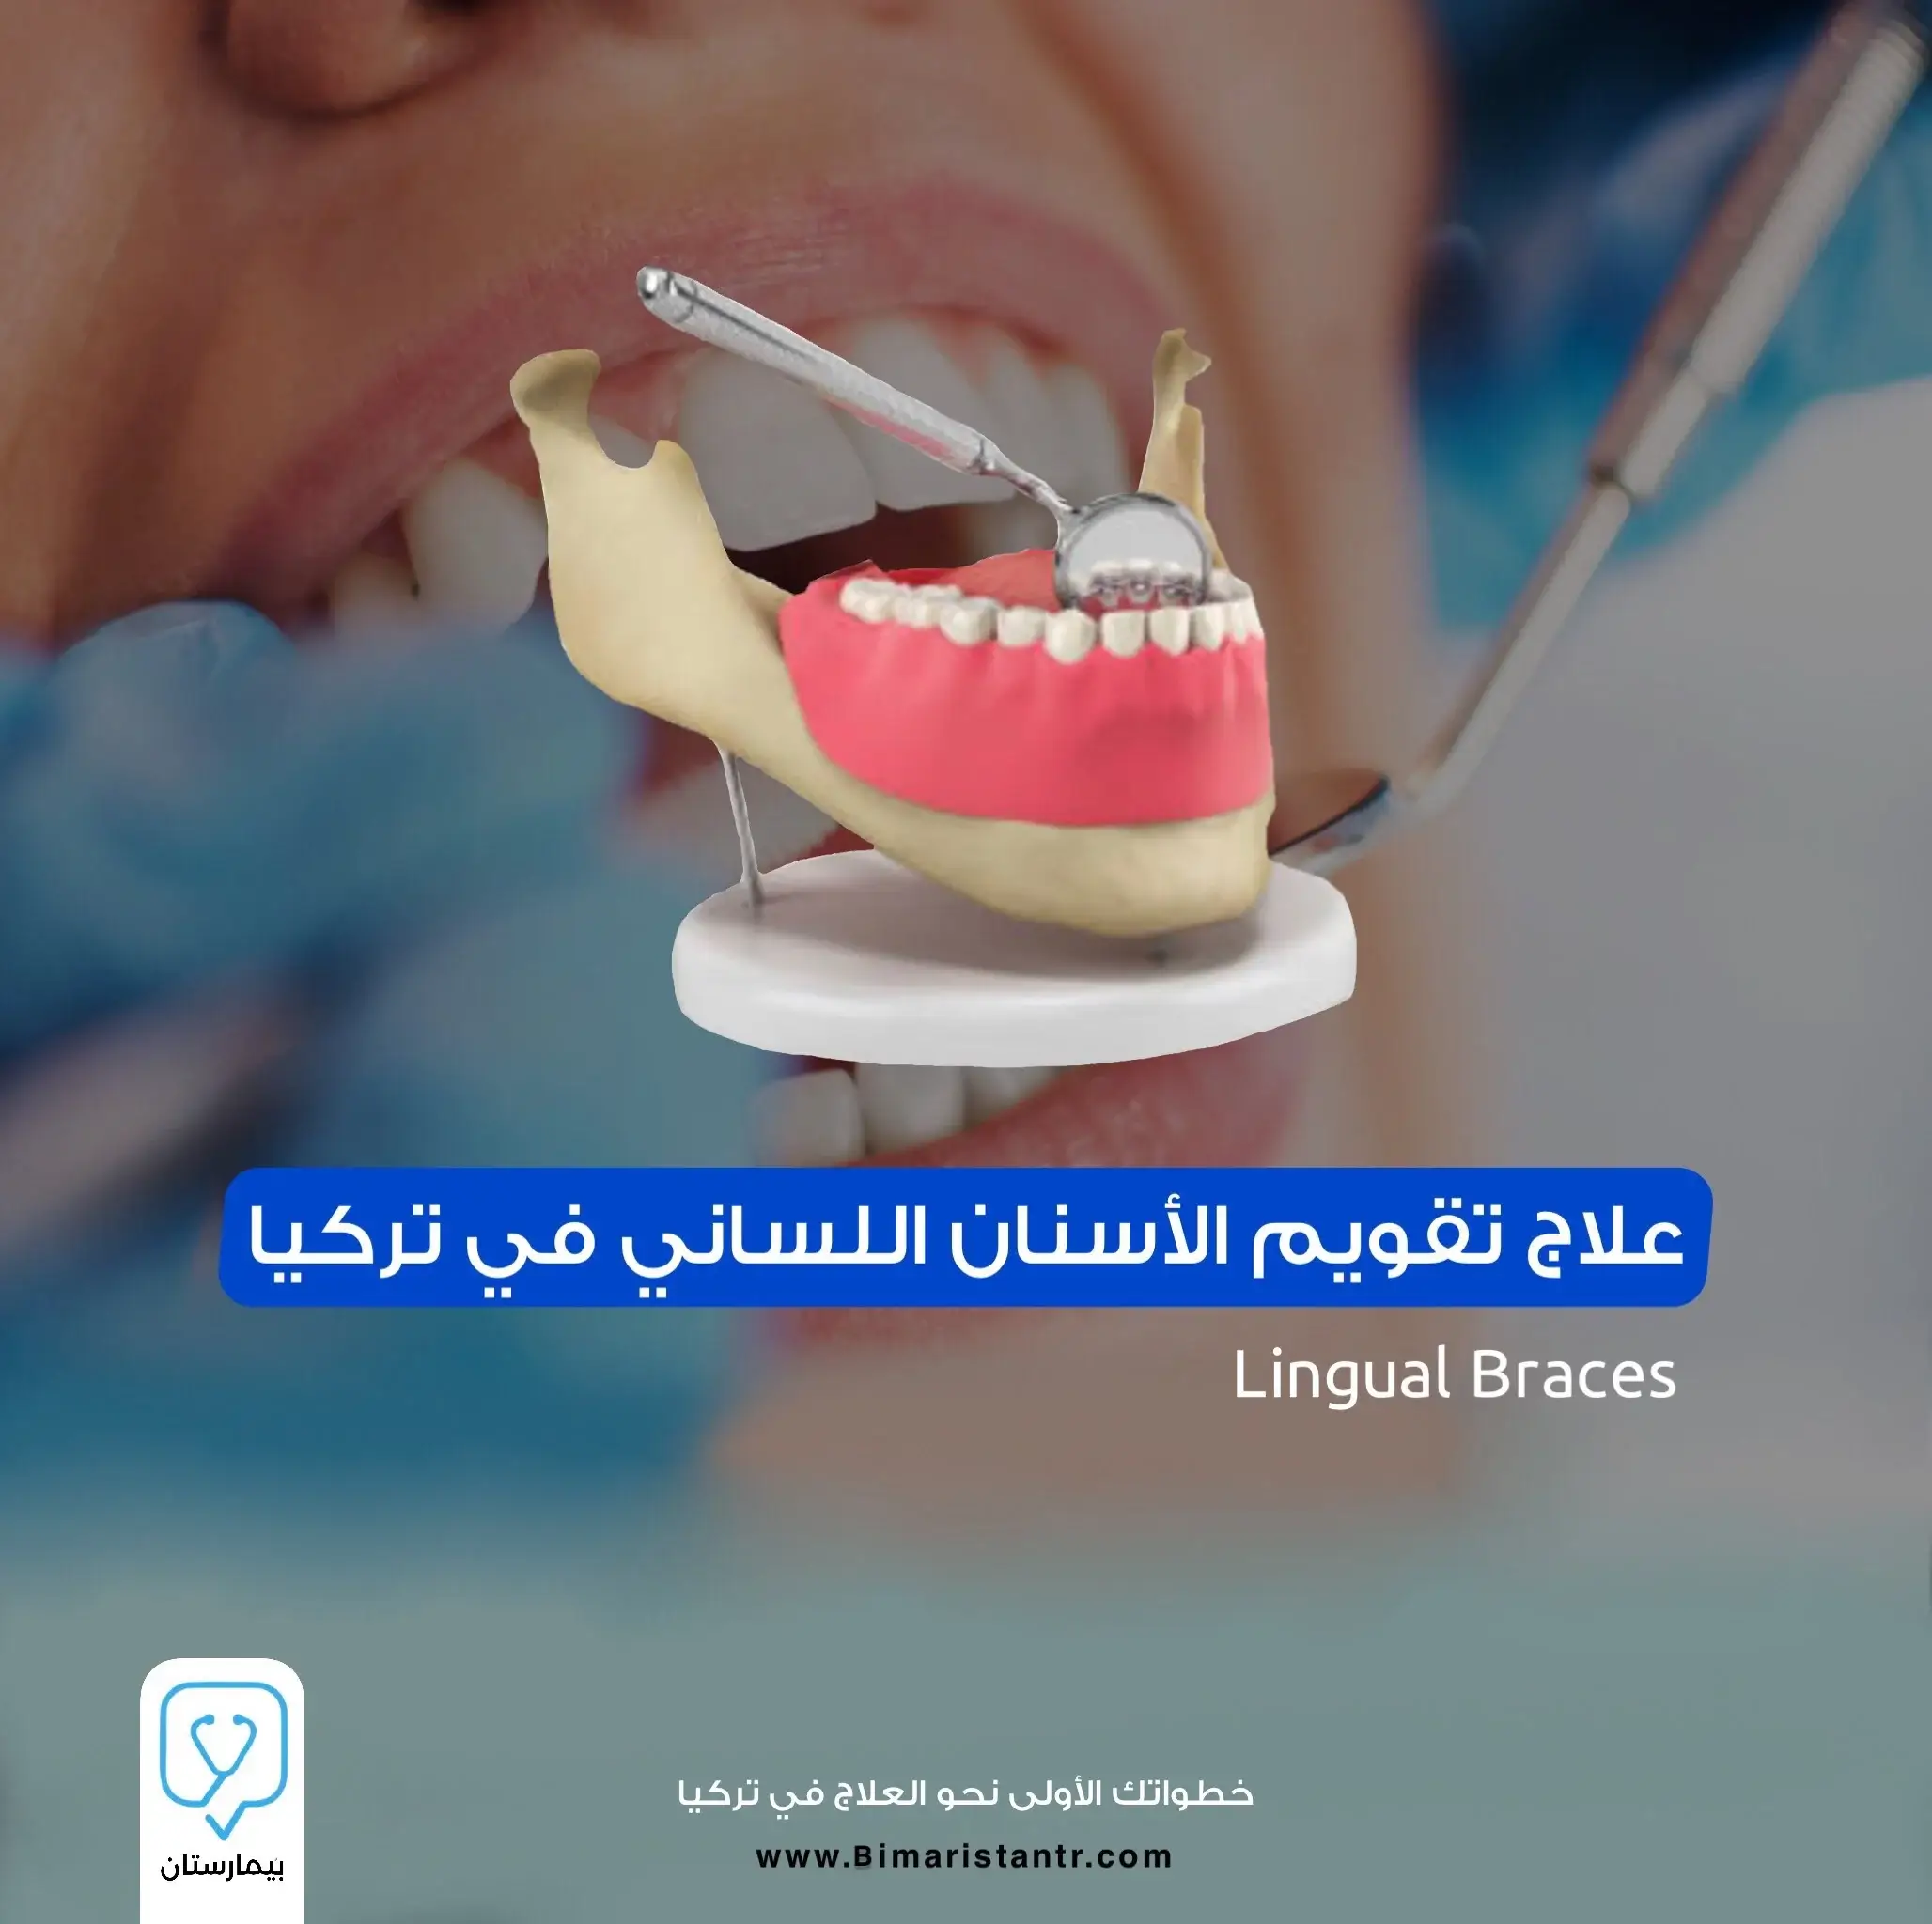 علاج تقويم الأسنان اللساني في تركيا